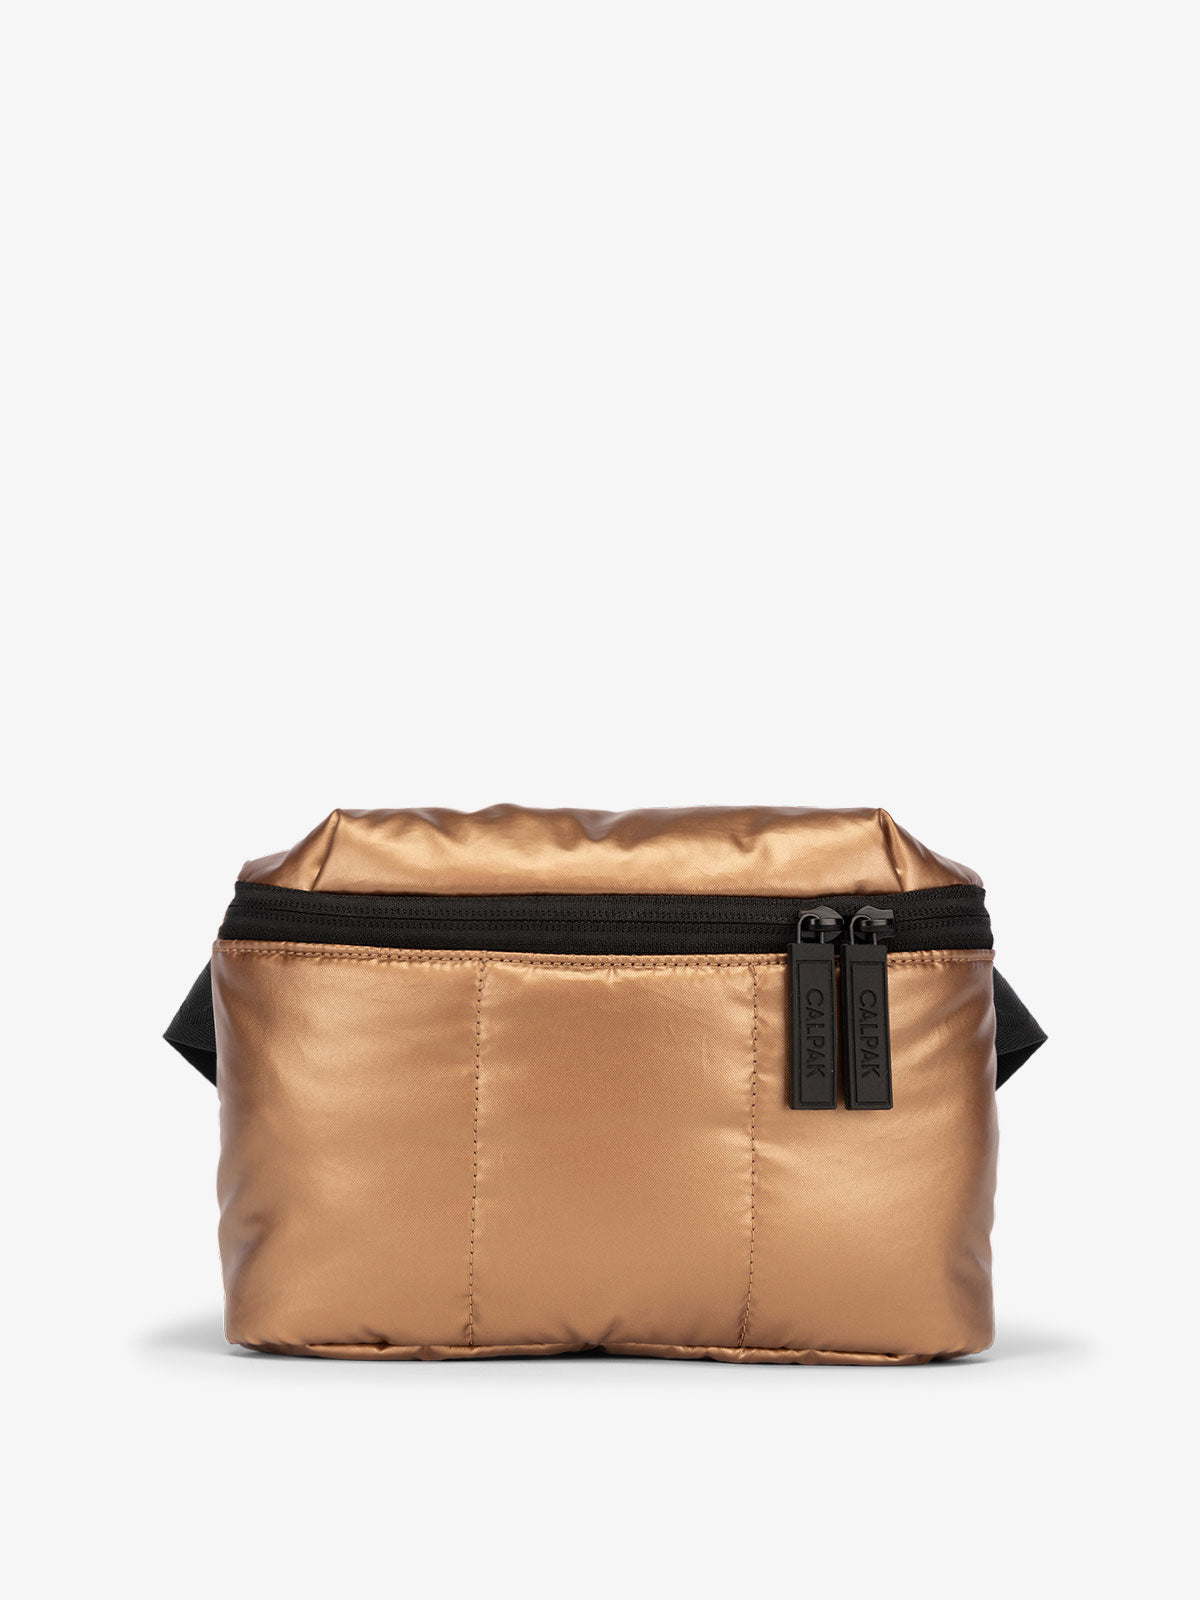 CALPAK Luka Mini Belt Bag with soft puffy exterior in metallic brown copper; BBM2201-COPPER